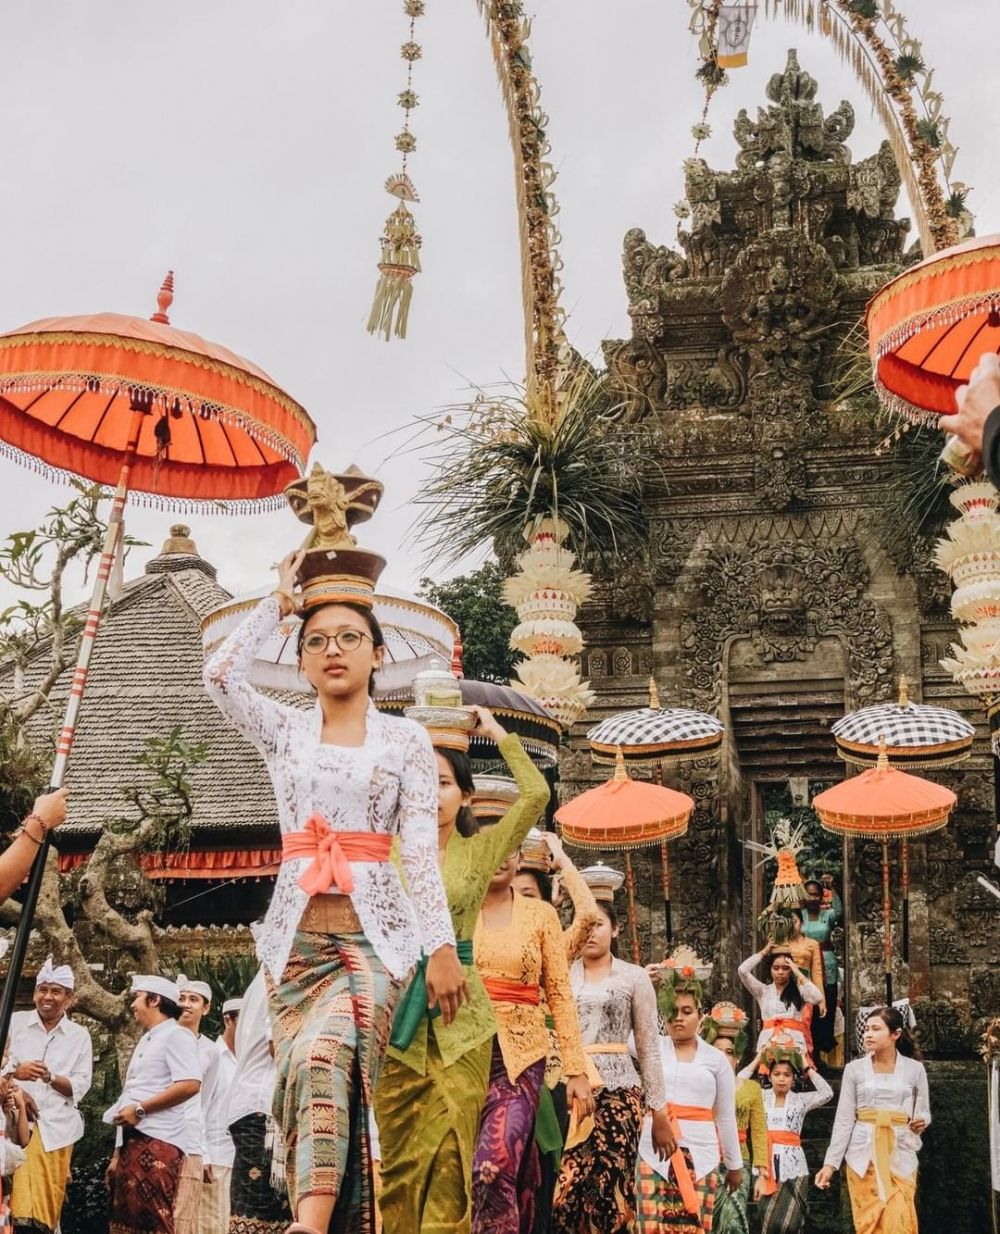 5 Wisata Festival Budaya Indonesia Yang Terpopuler Dengan Makna Yang Dalam 2